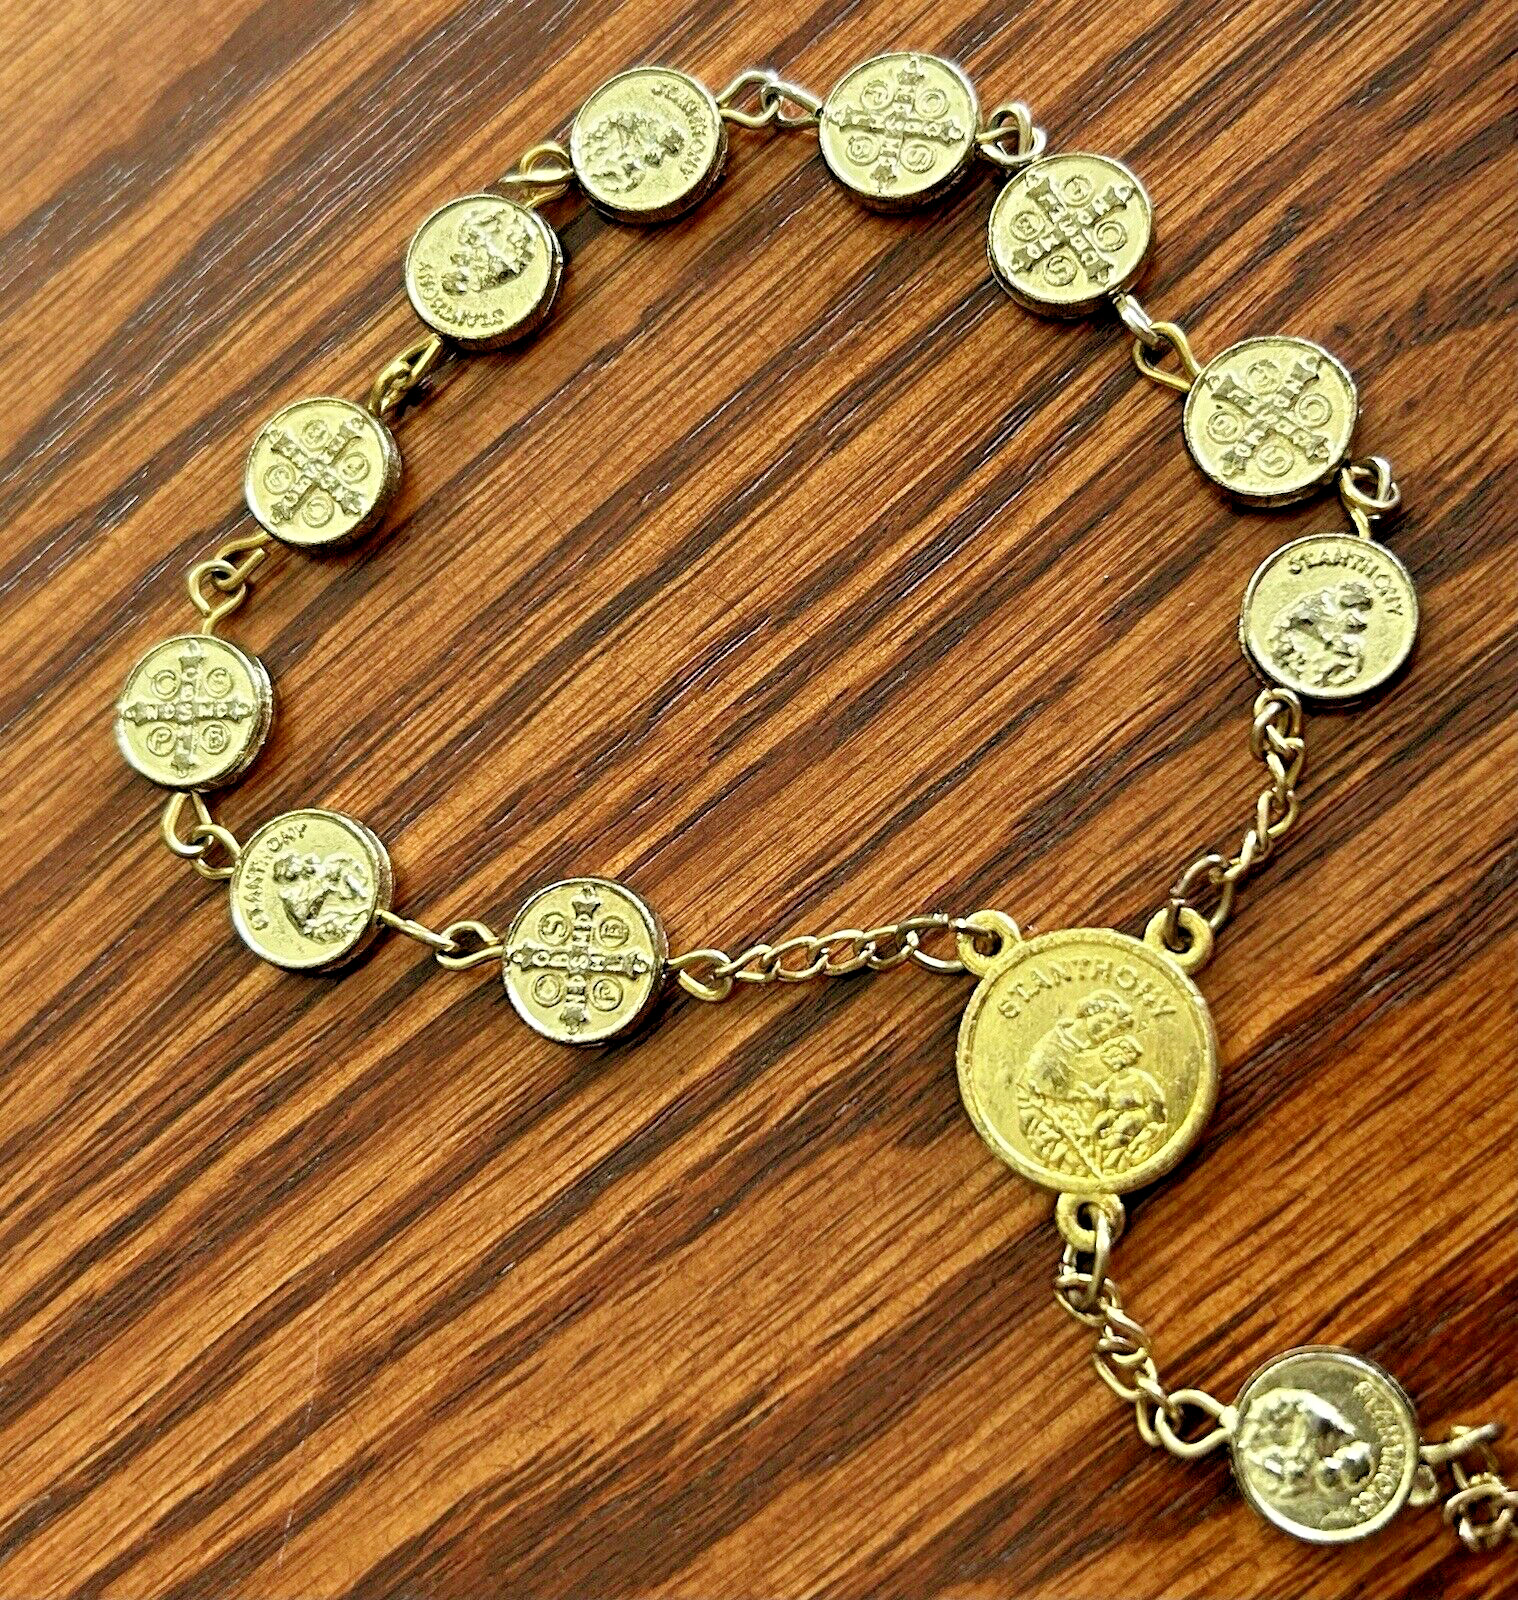 St. Anthony Catholic 10 Bead One Single Decade Finger Rosary Chaplet